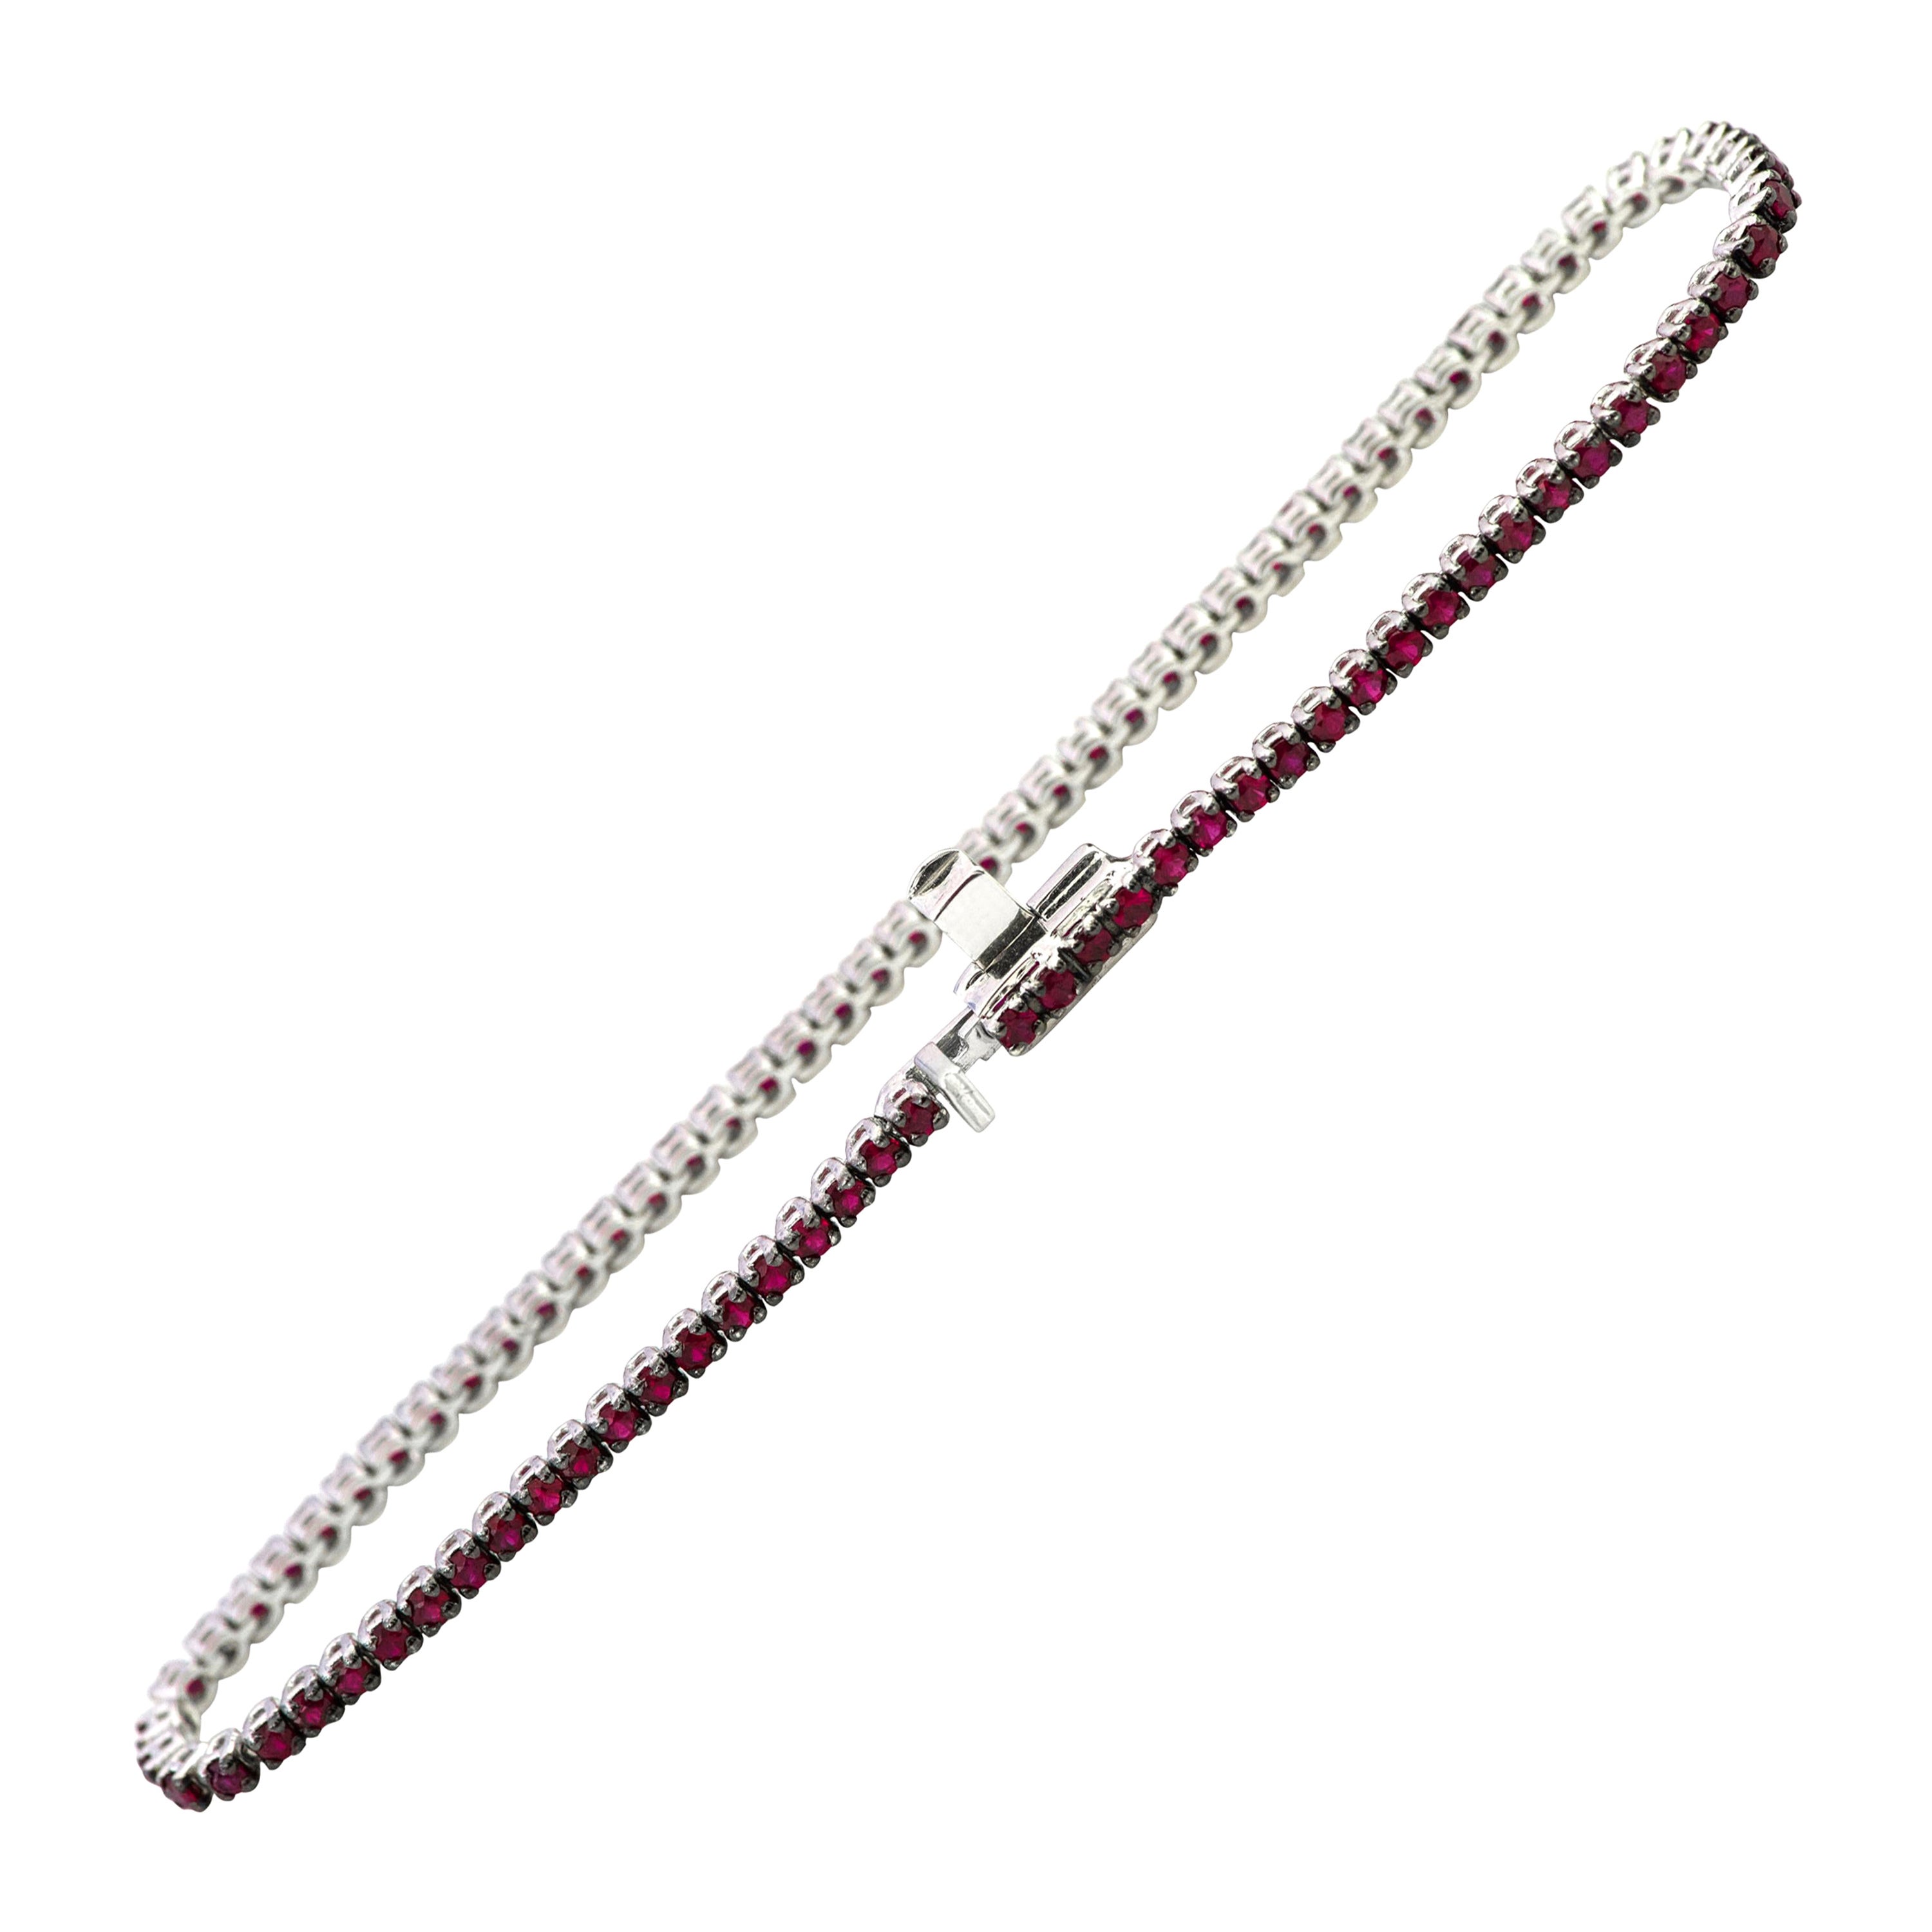 Bracelet tennis en or blanc 18 carats avec rubis taille ronde de 1,32 carat